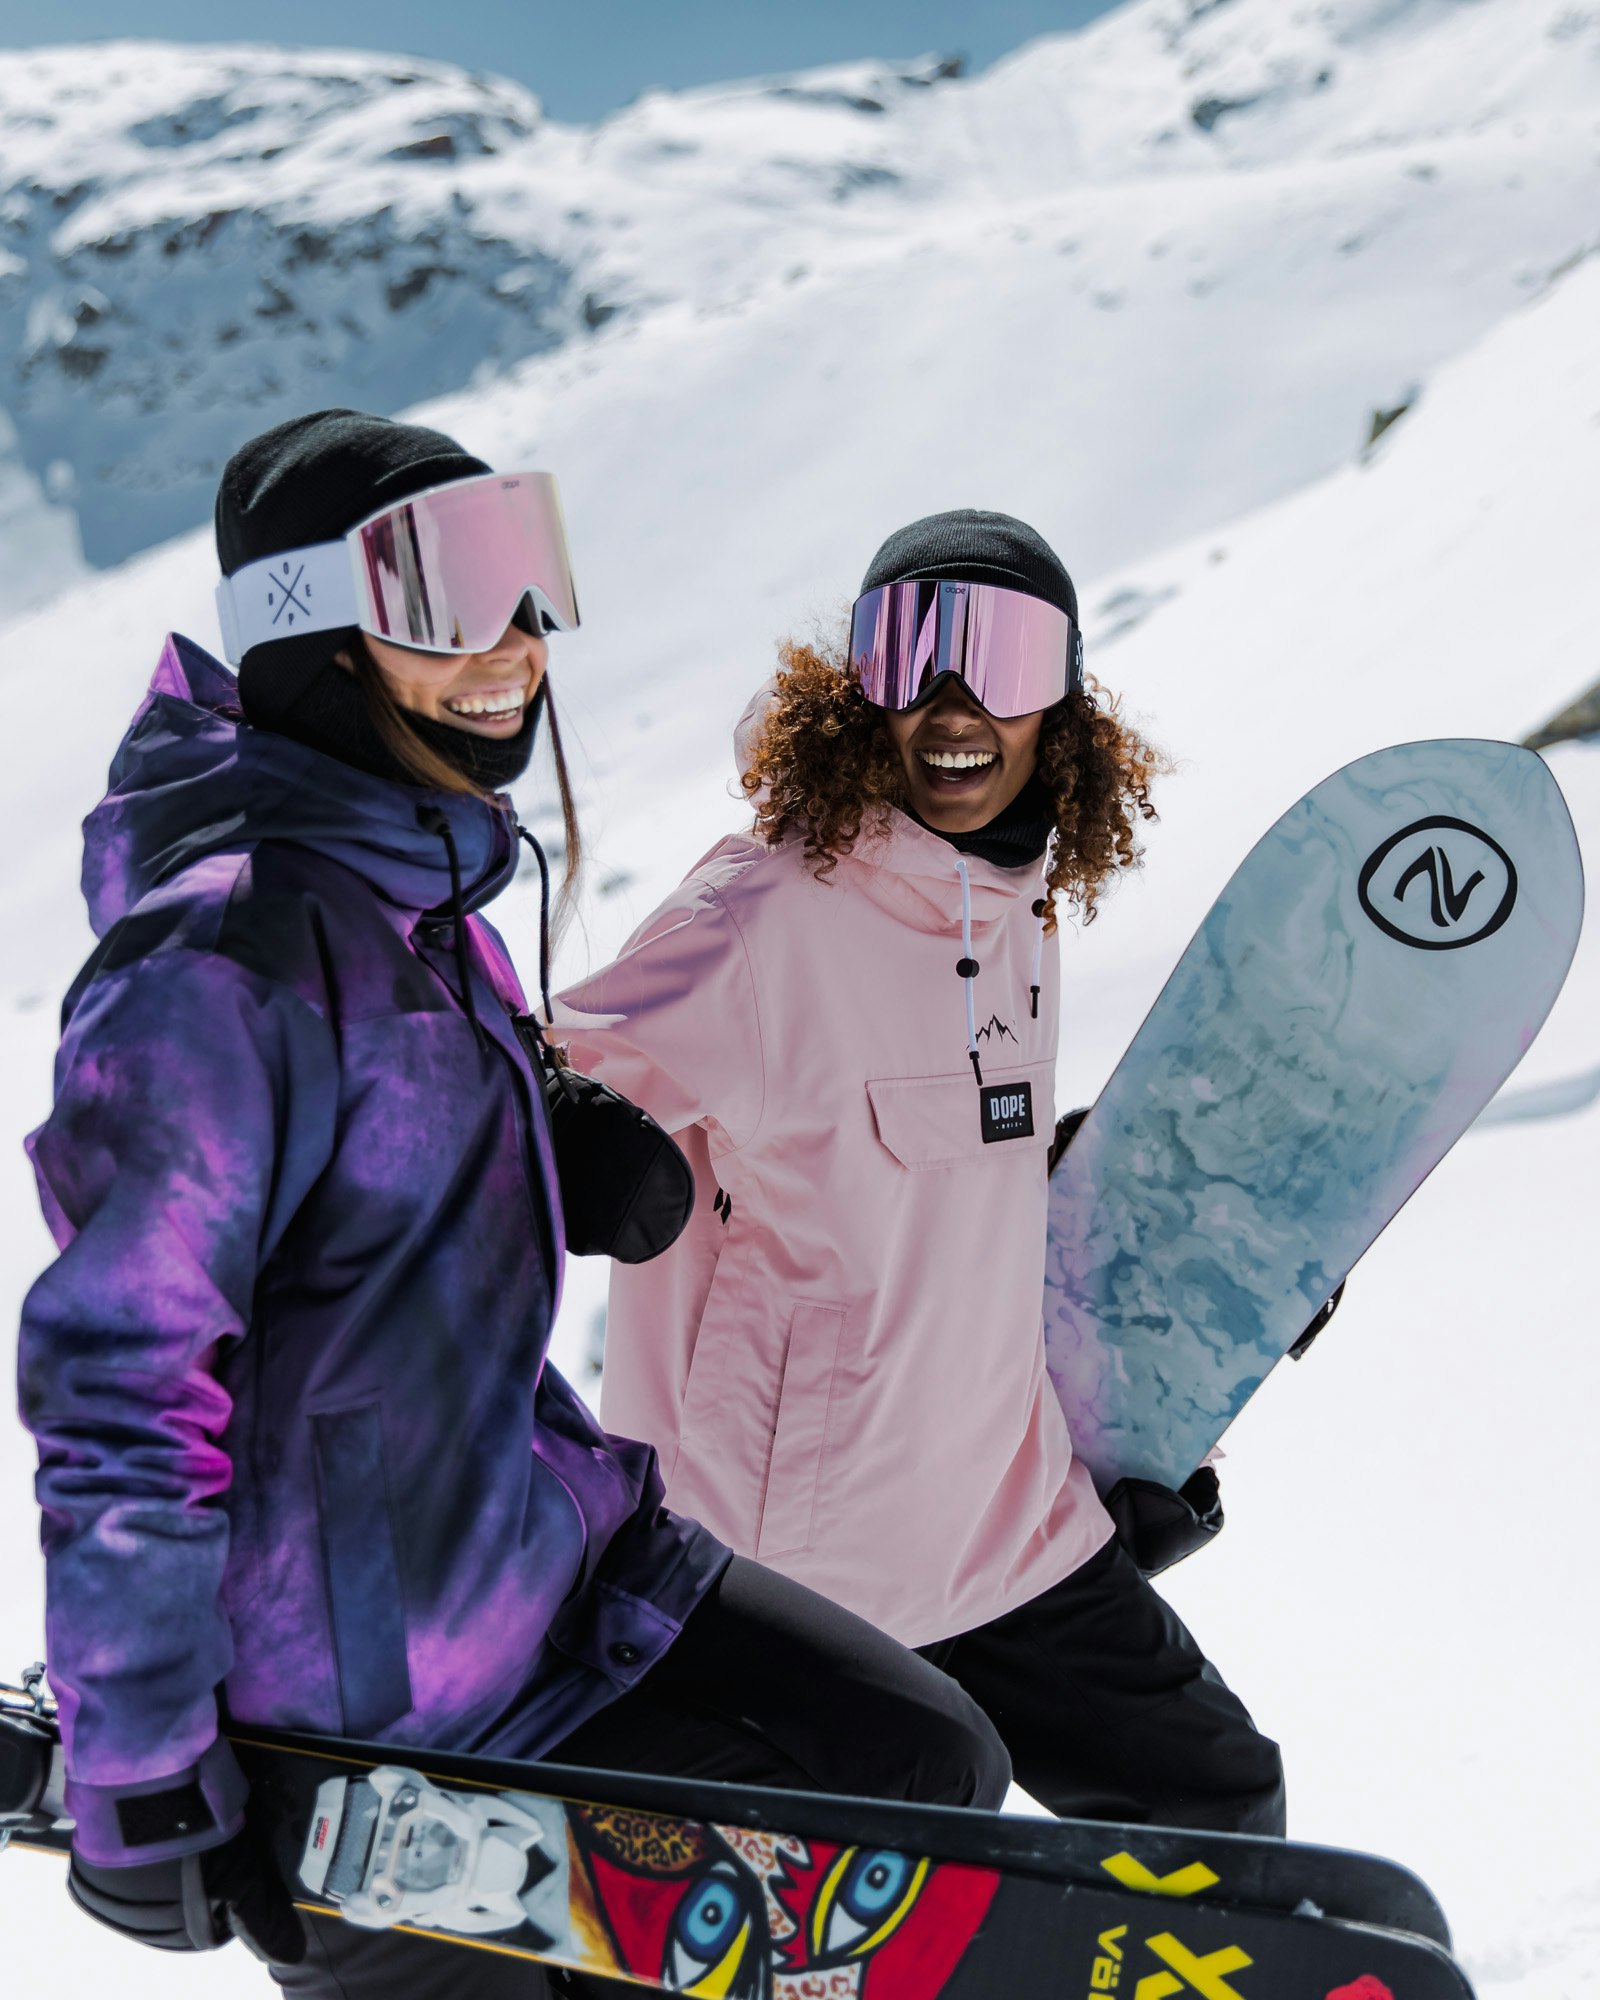 Posizione e Regolazione Degli Attacchi Da Snowboard